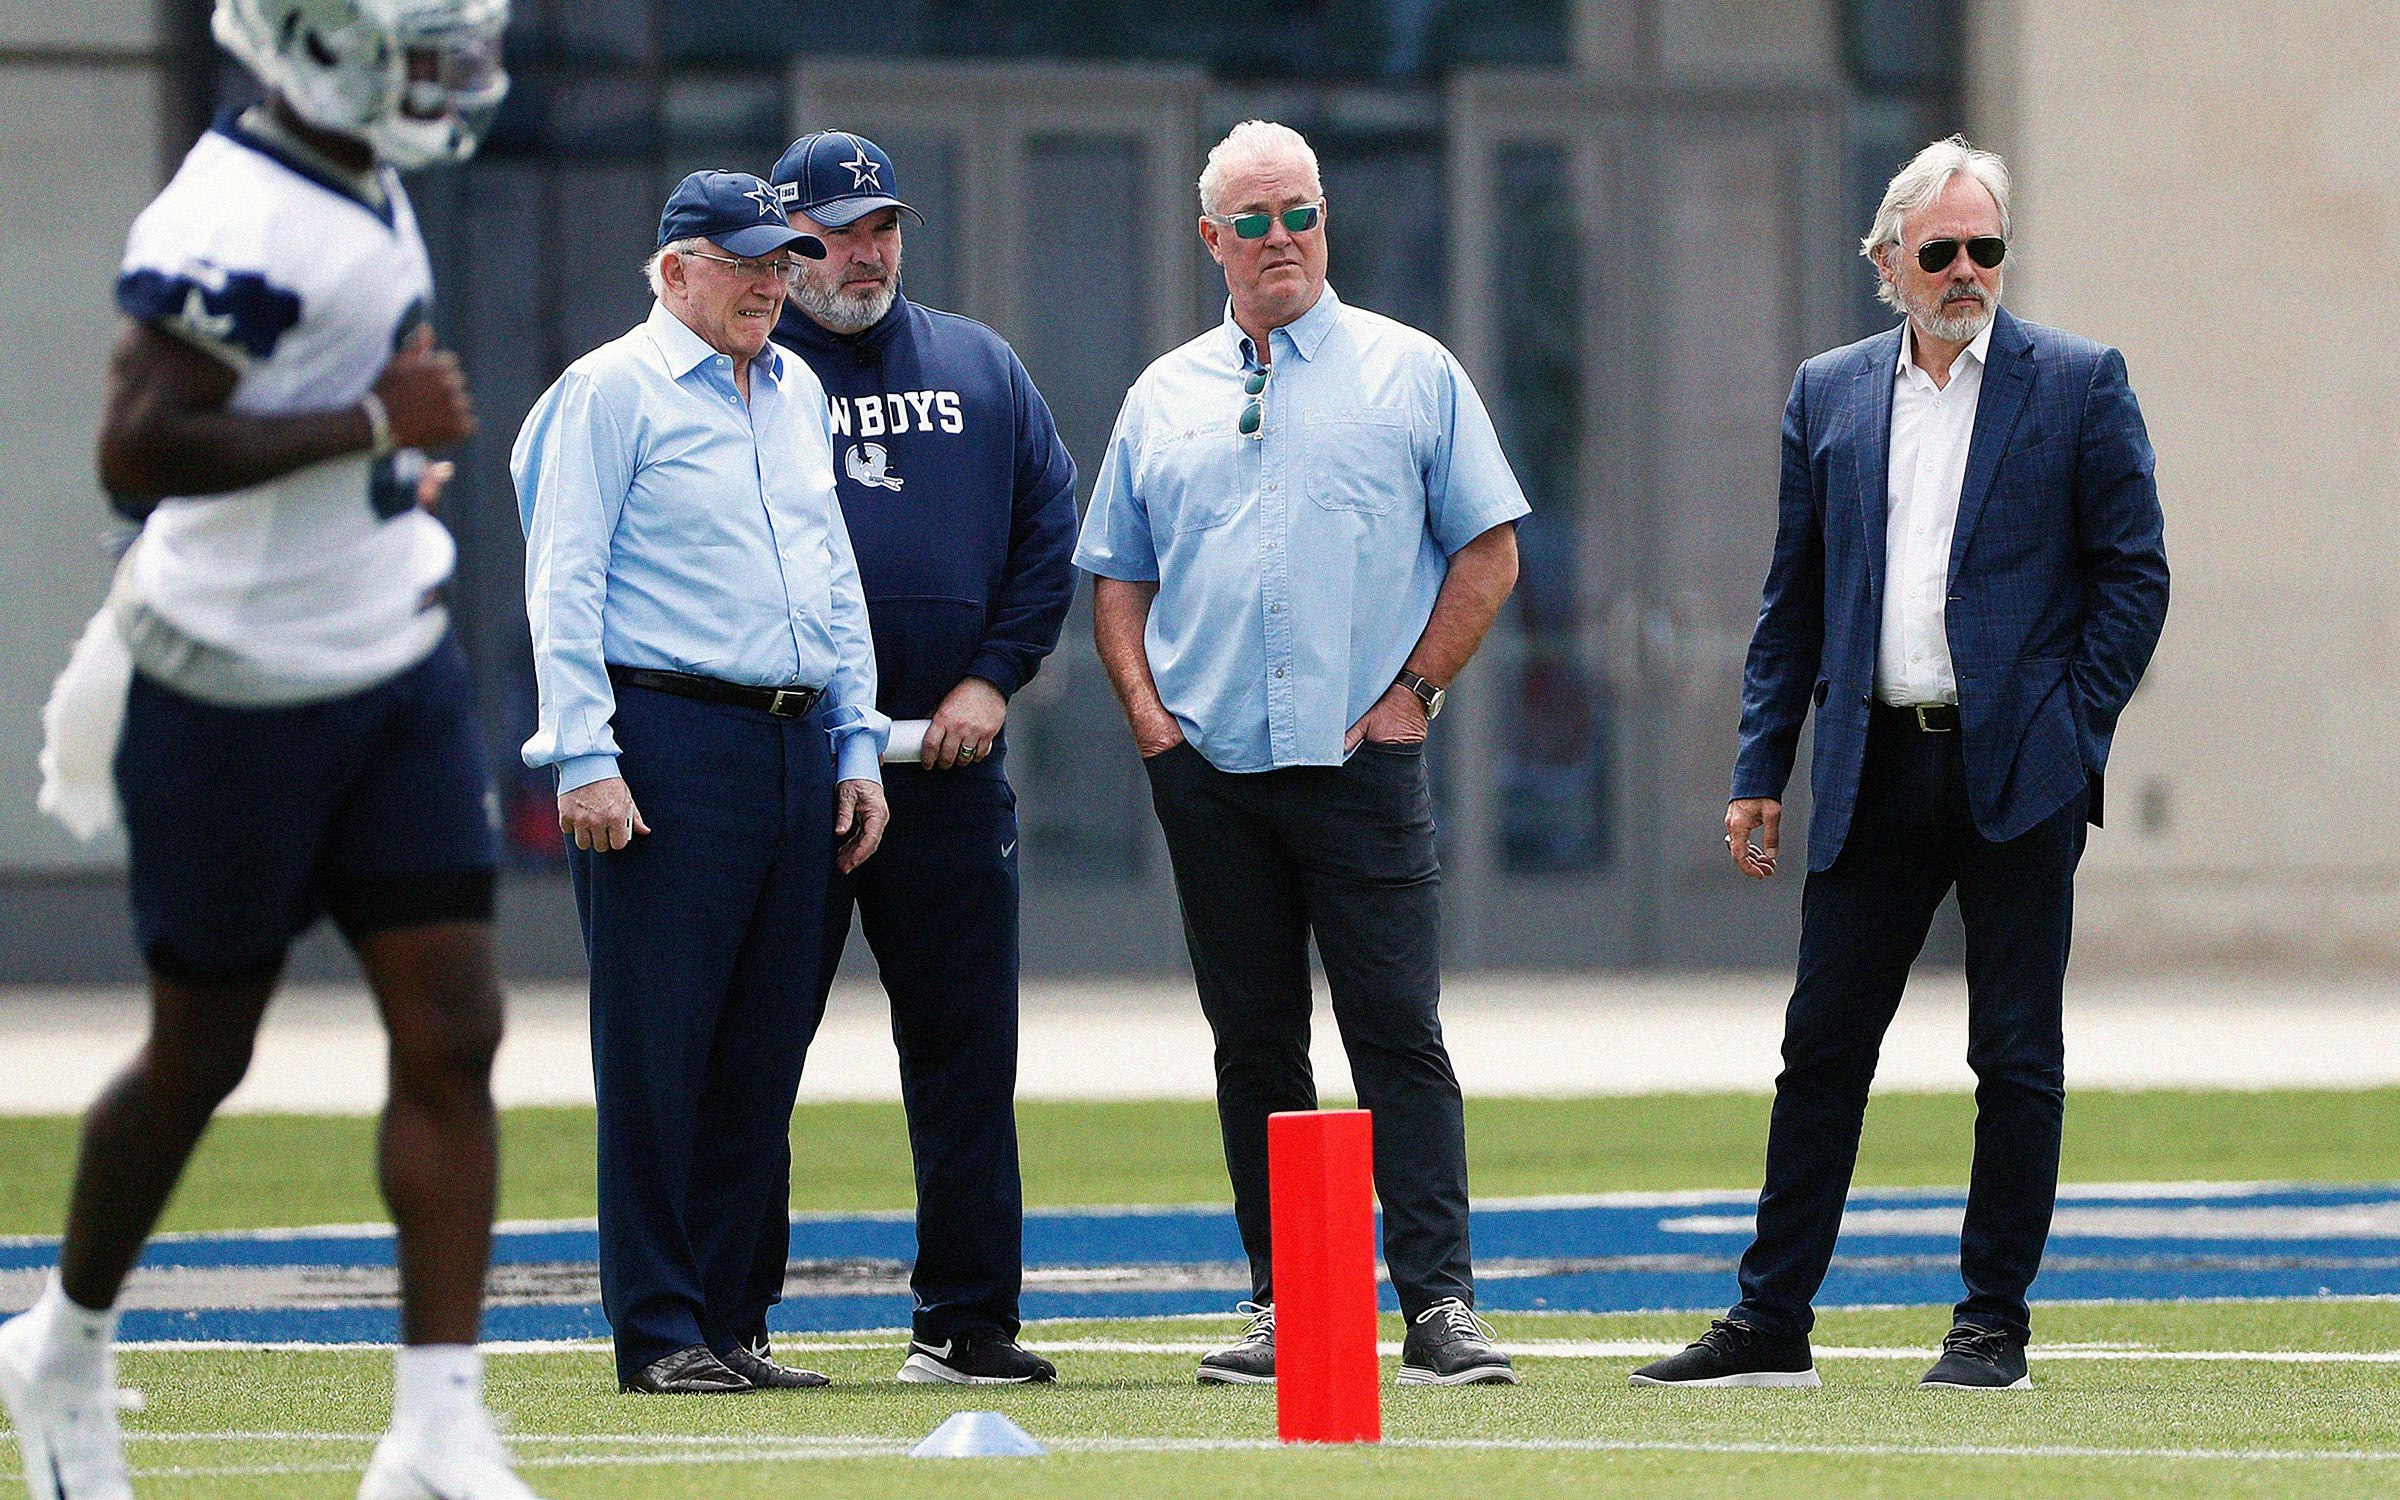 The Dallas Cowboys Voyeurism Scandal Reveals the Teams Lost Soul pic